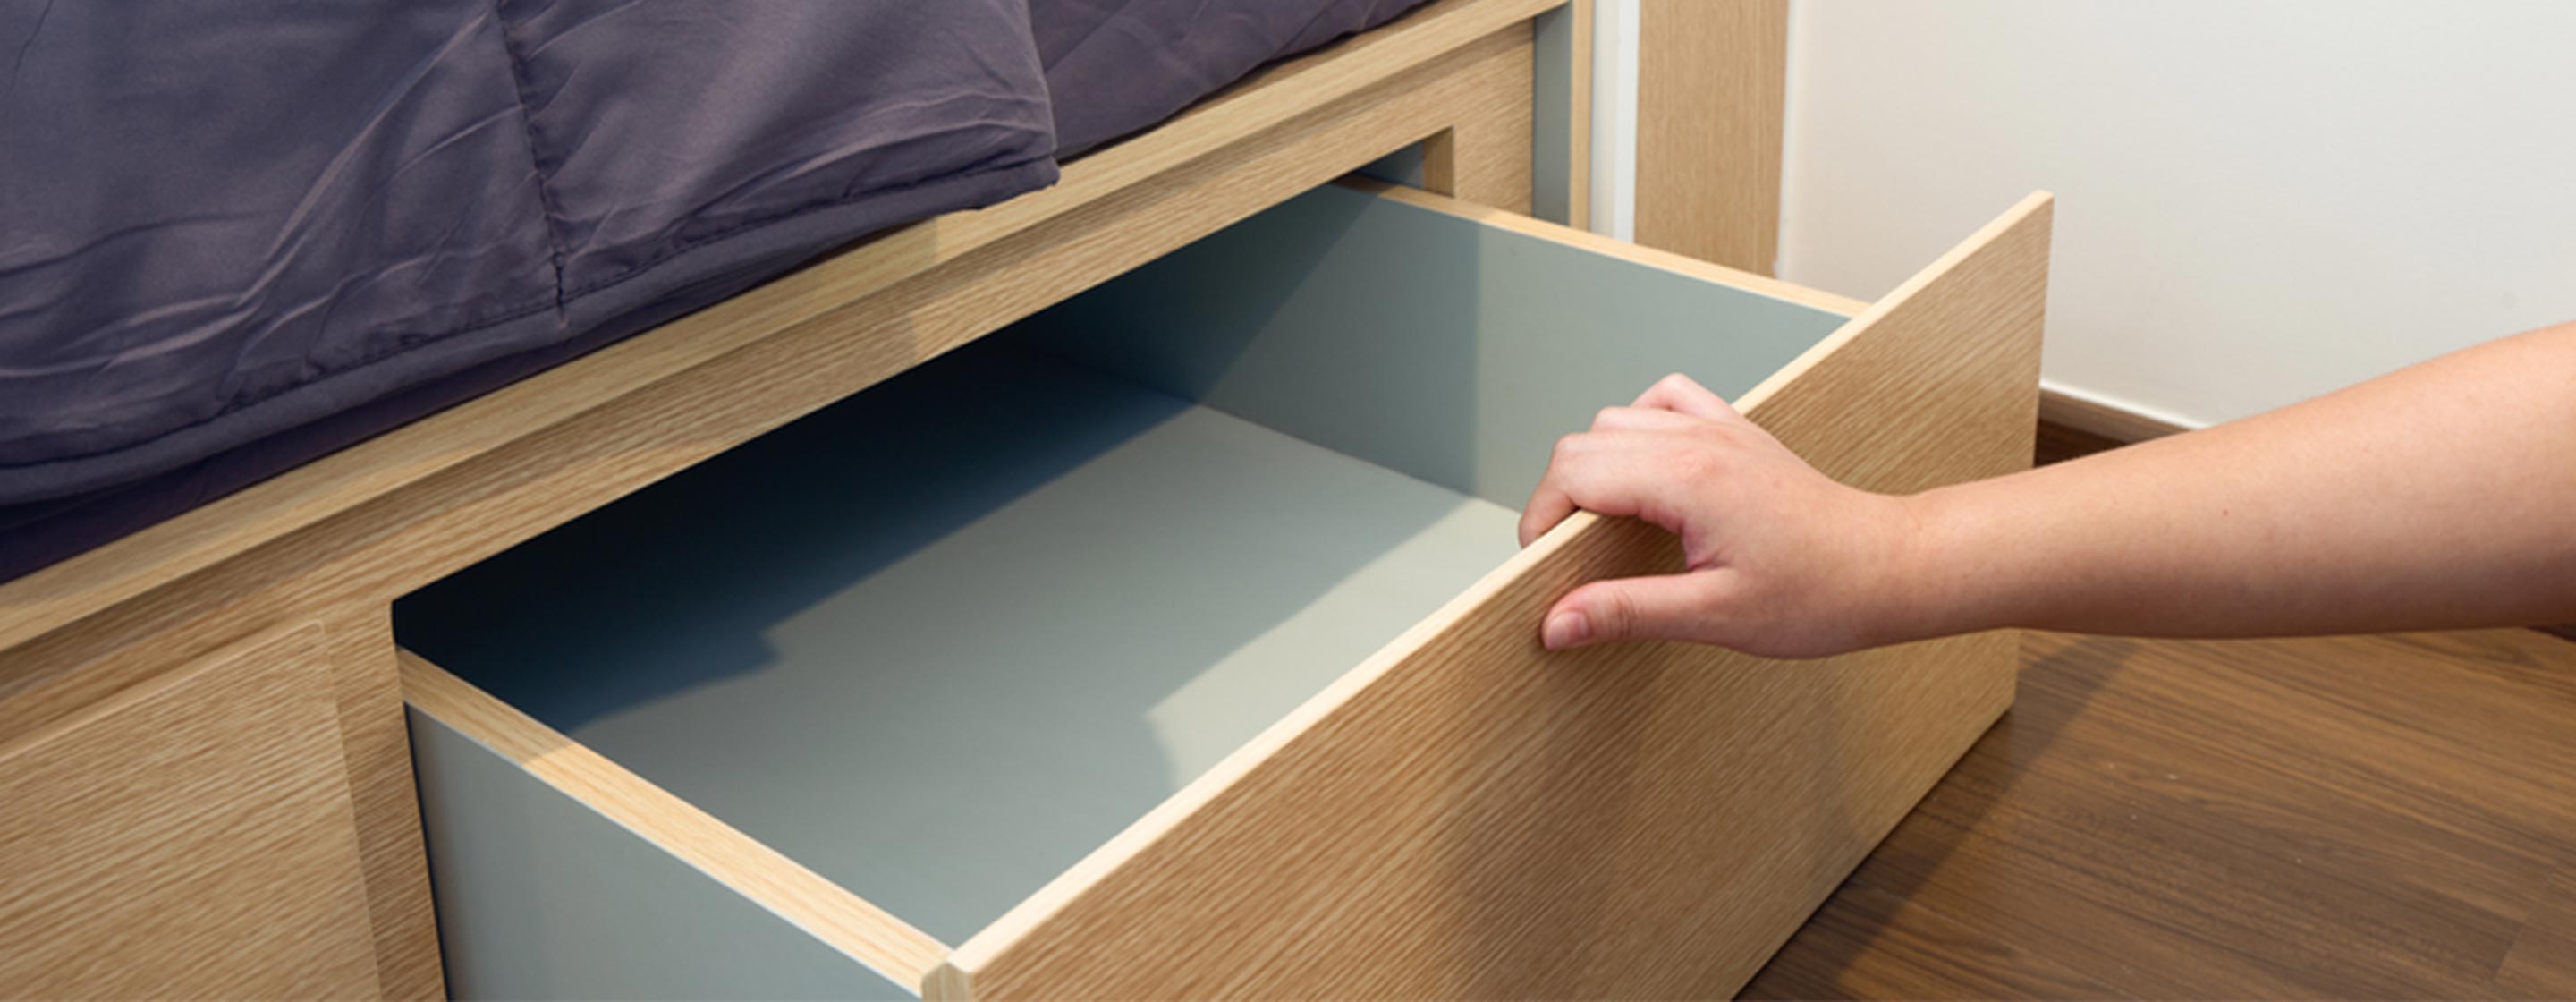 storage drawer under bed